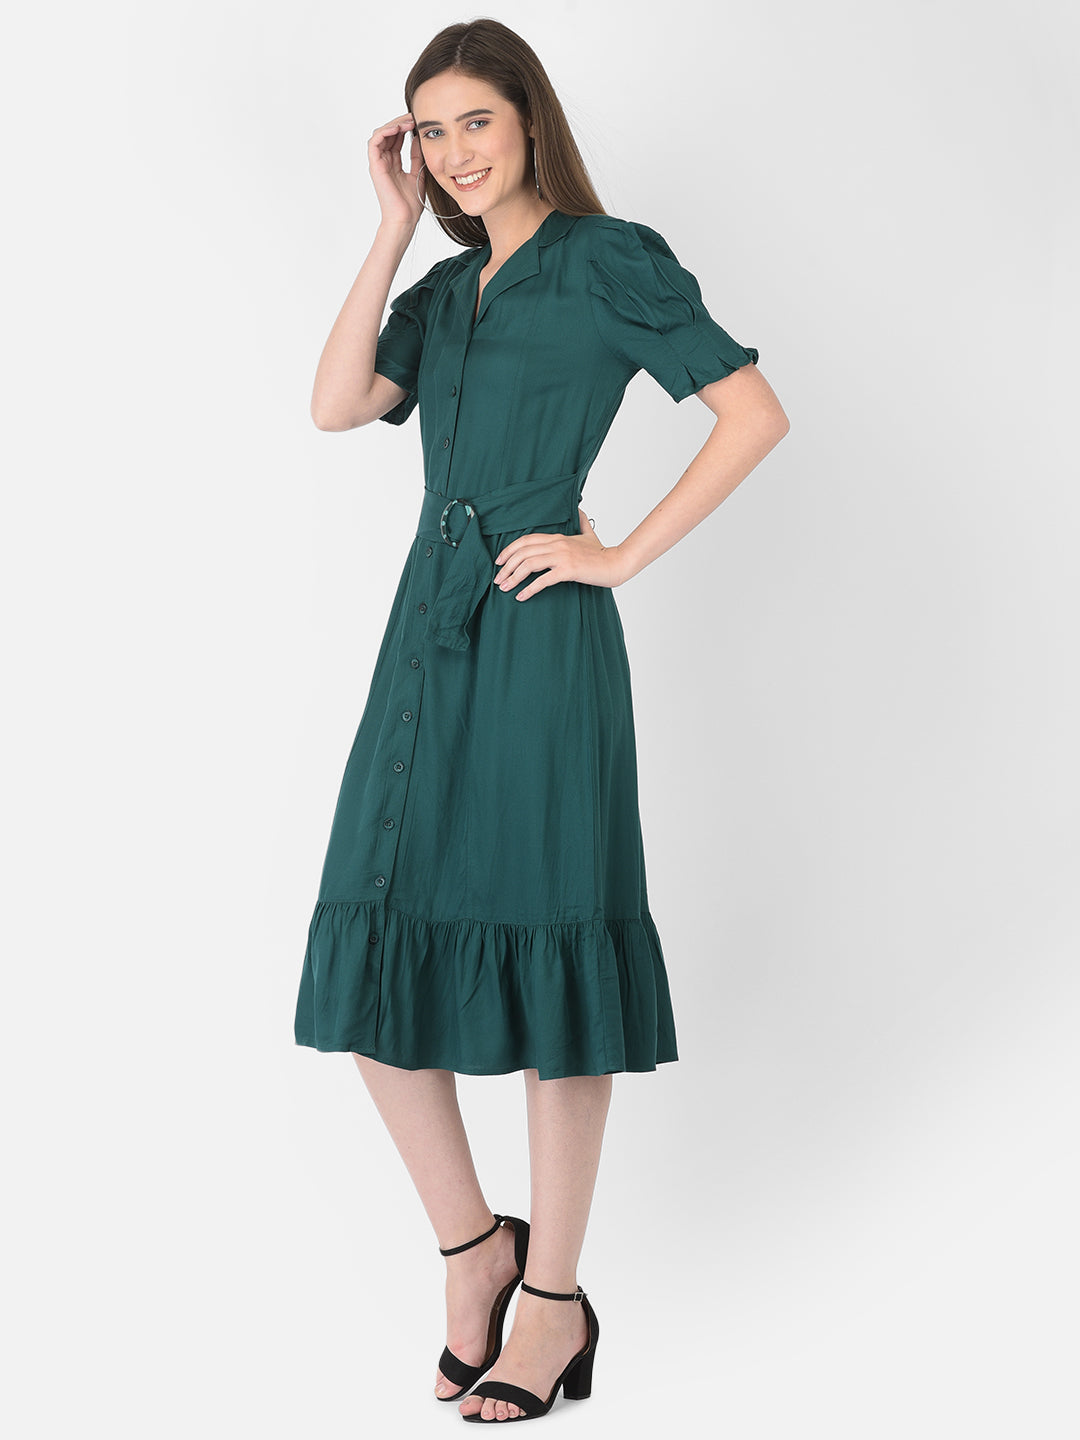 Greenbottle Half Sleeve Shirt Dress